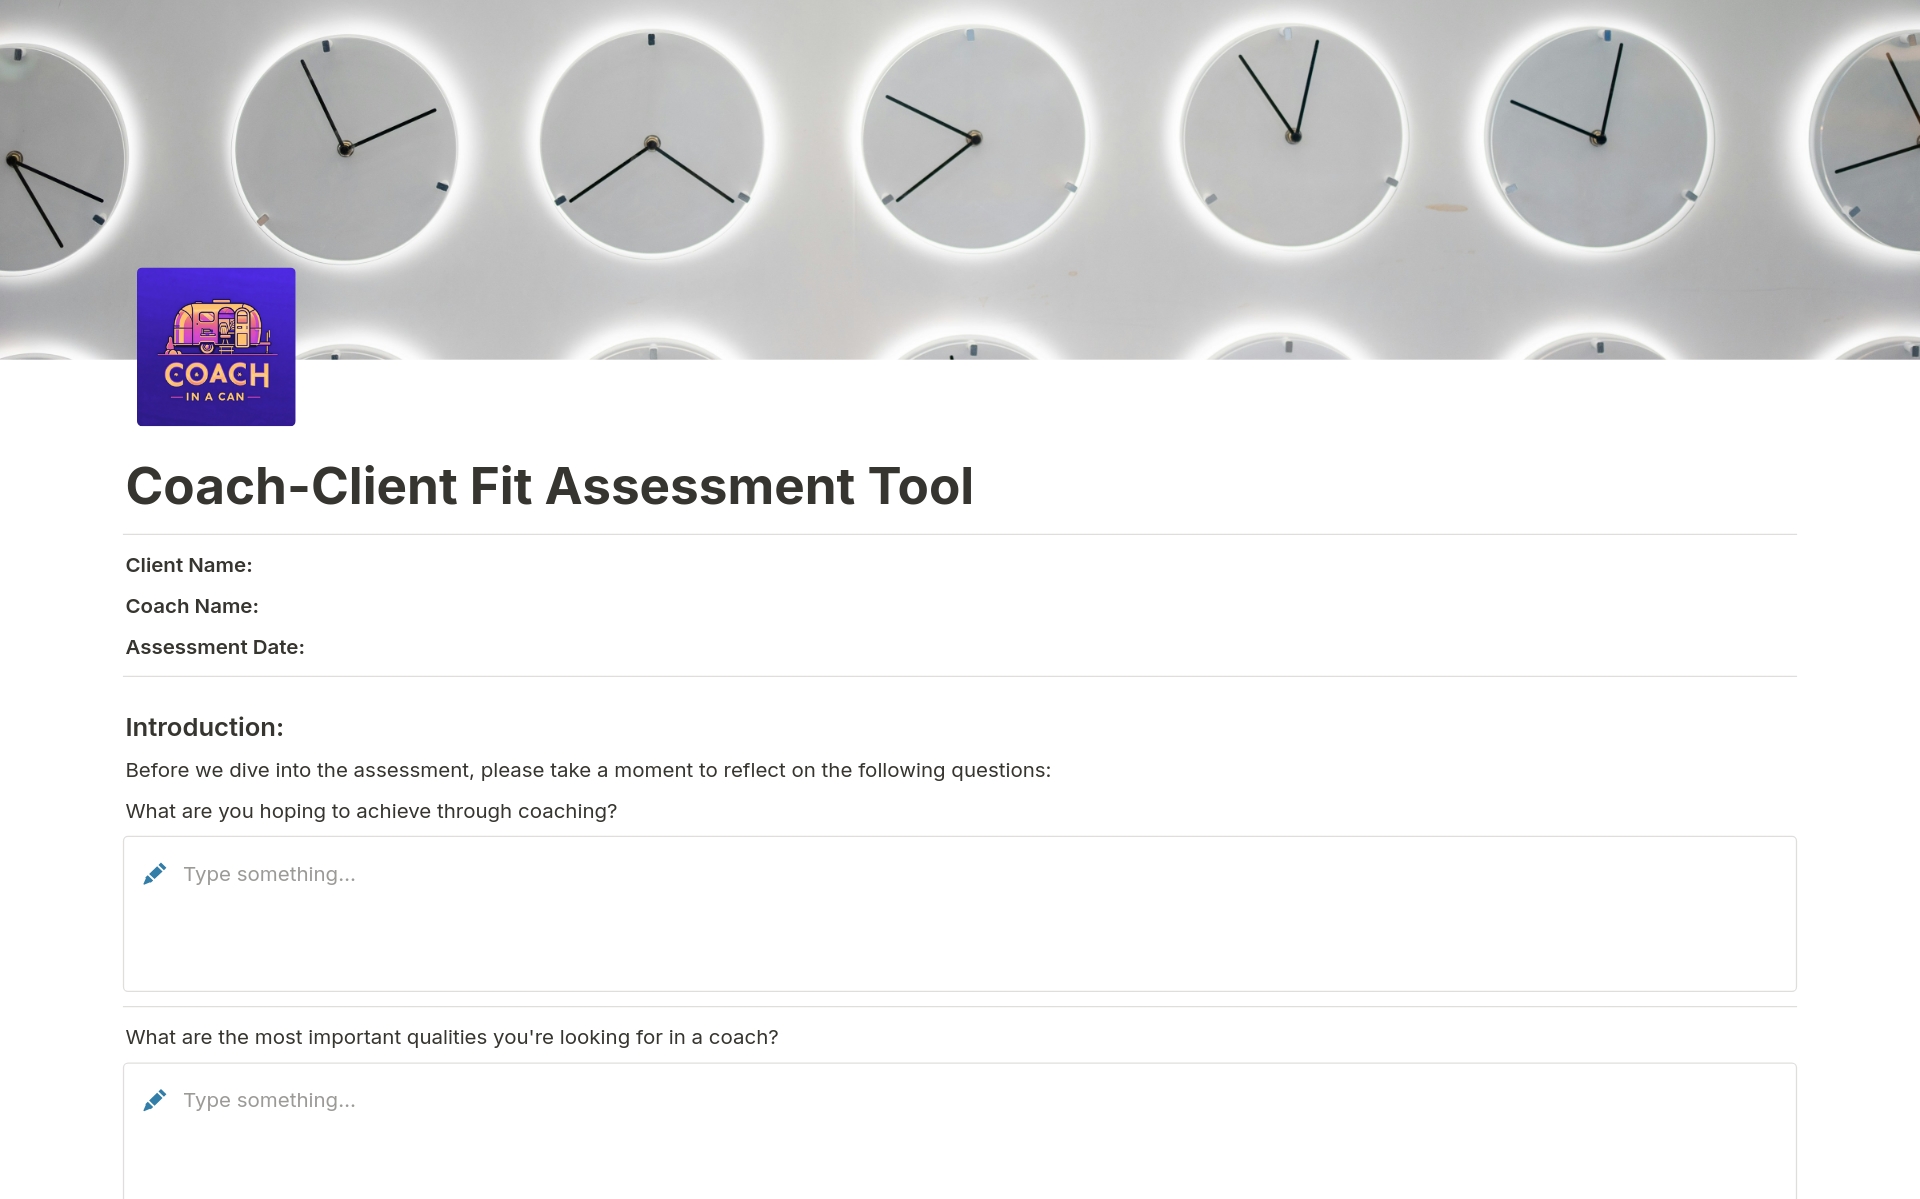 Uma prévia do modelo para Coach-Client Fit Assessment Tool